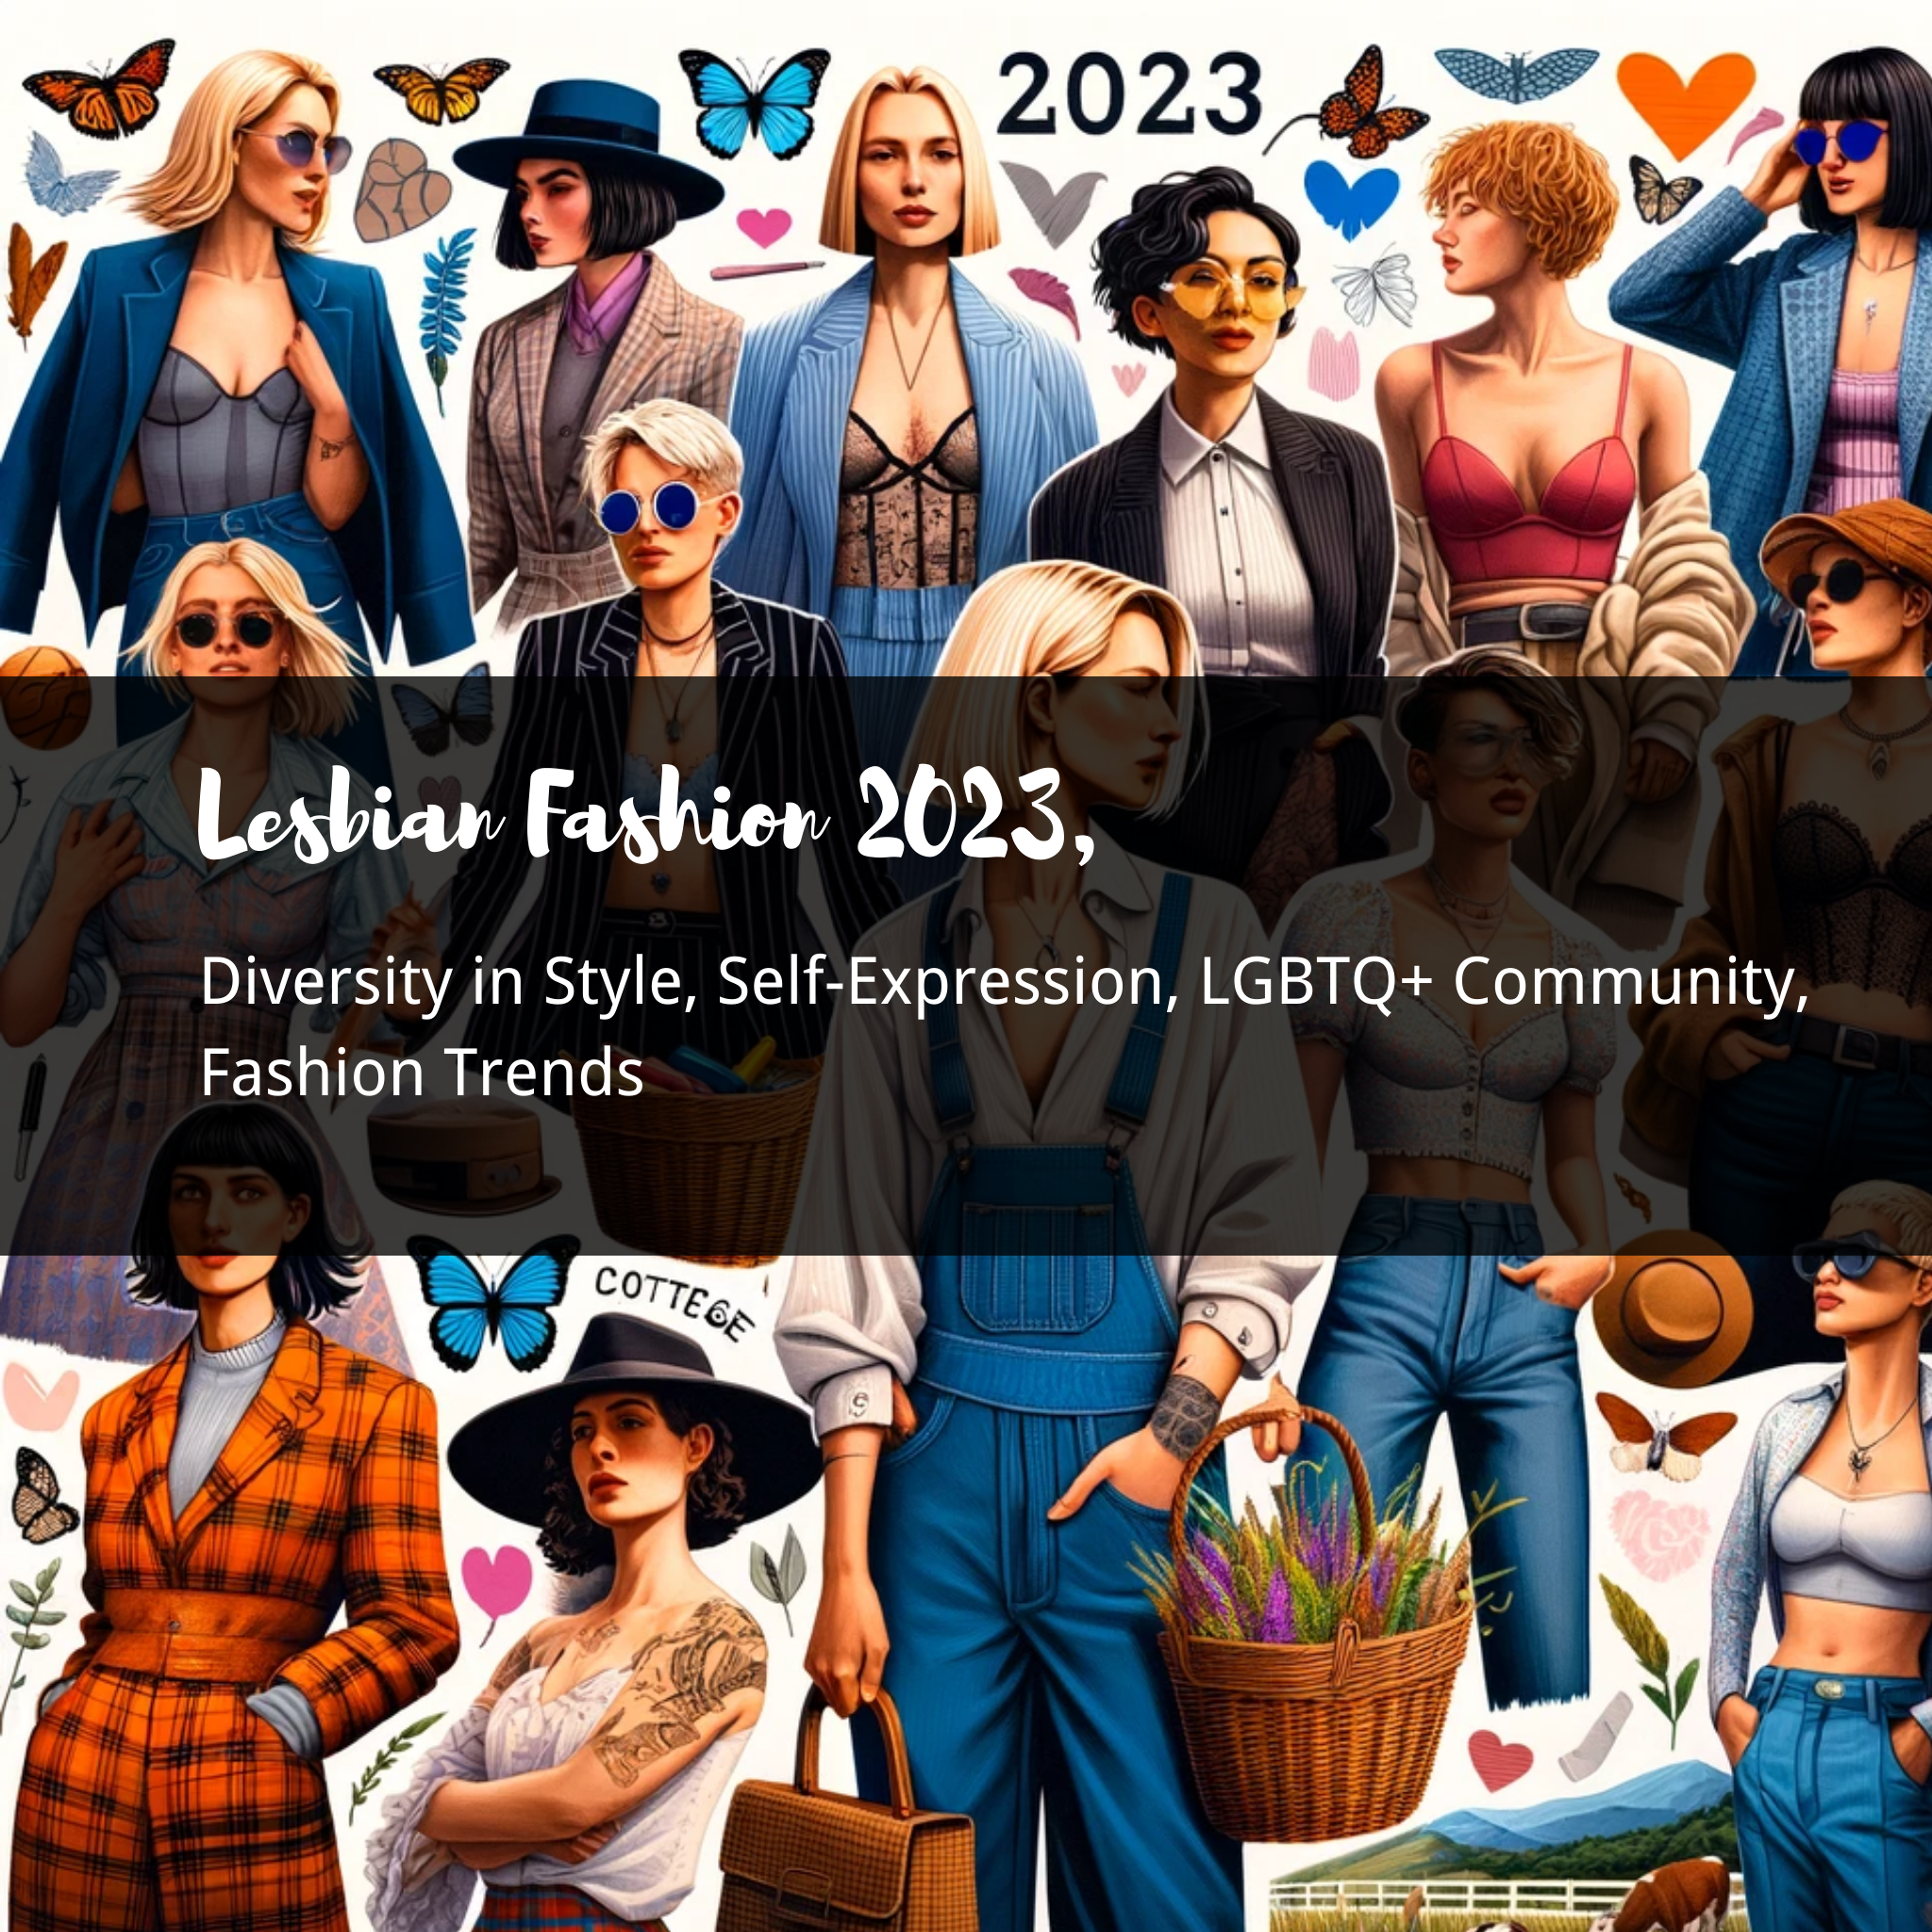 Embracing Diversity: 2023's Lesbian Fashion Trends - Femme, Butch, & Cottagecore